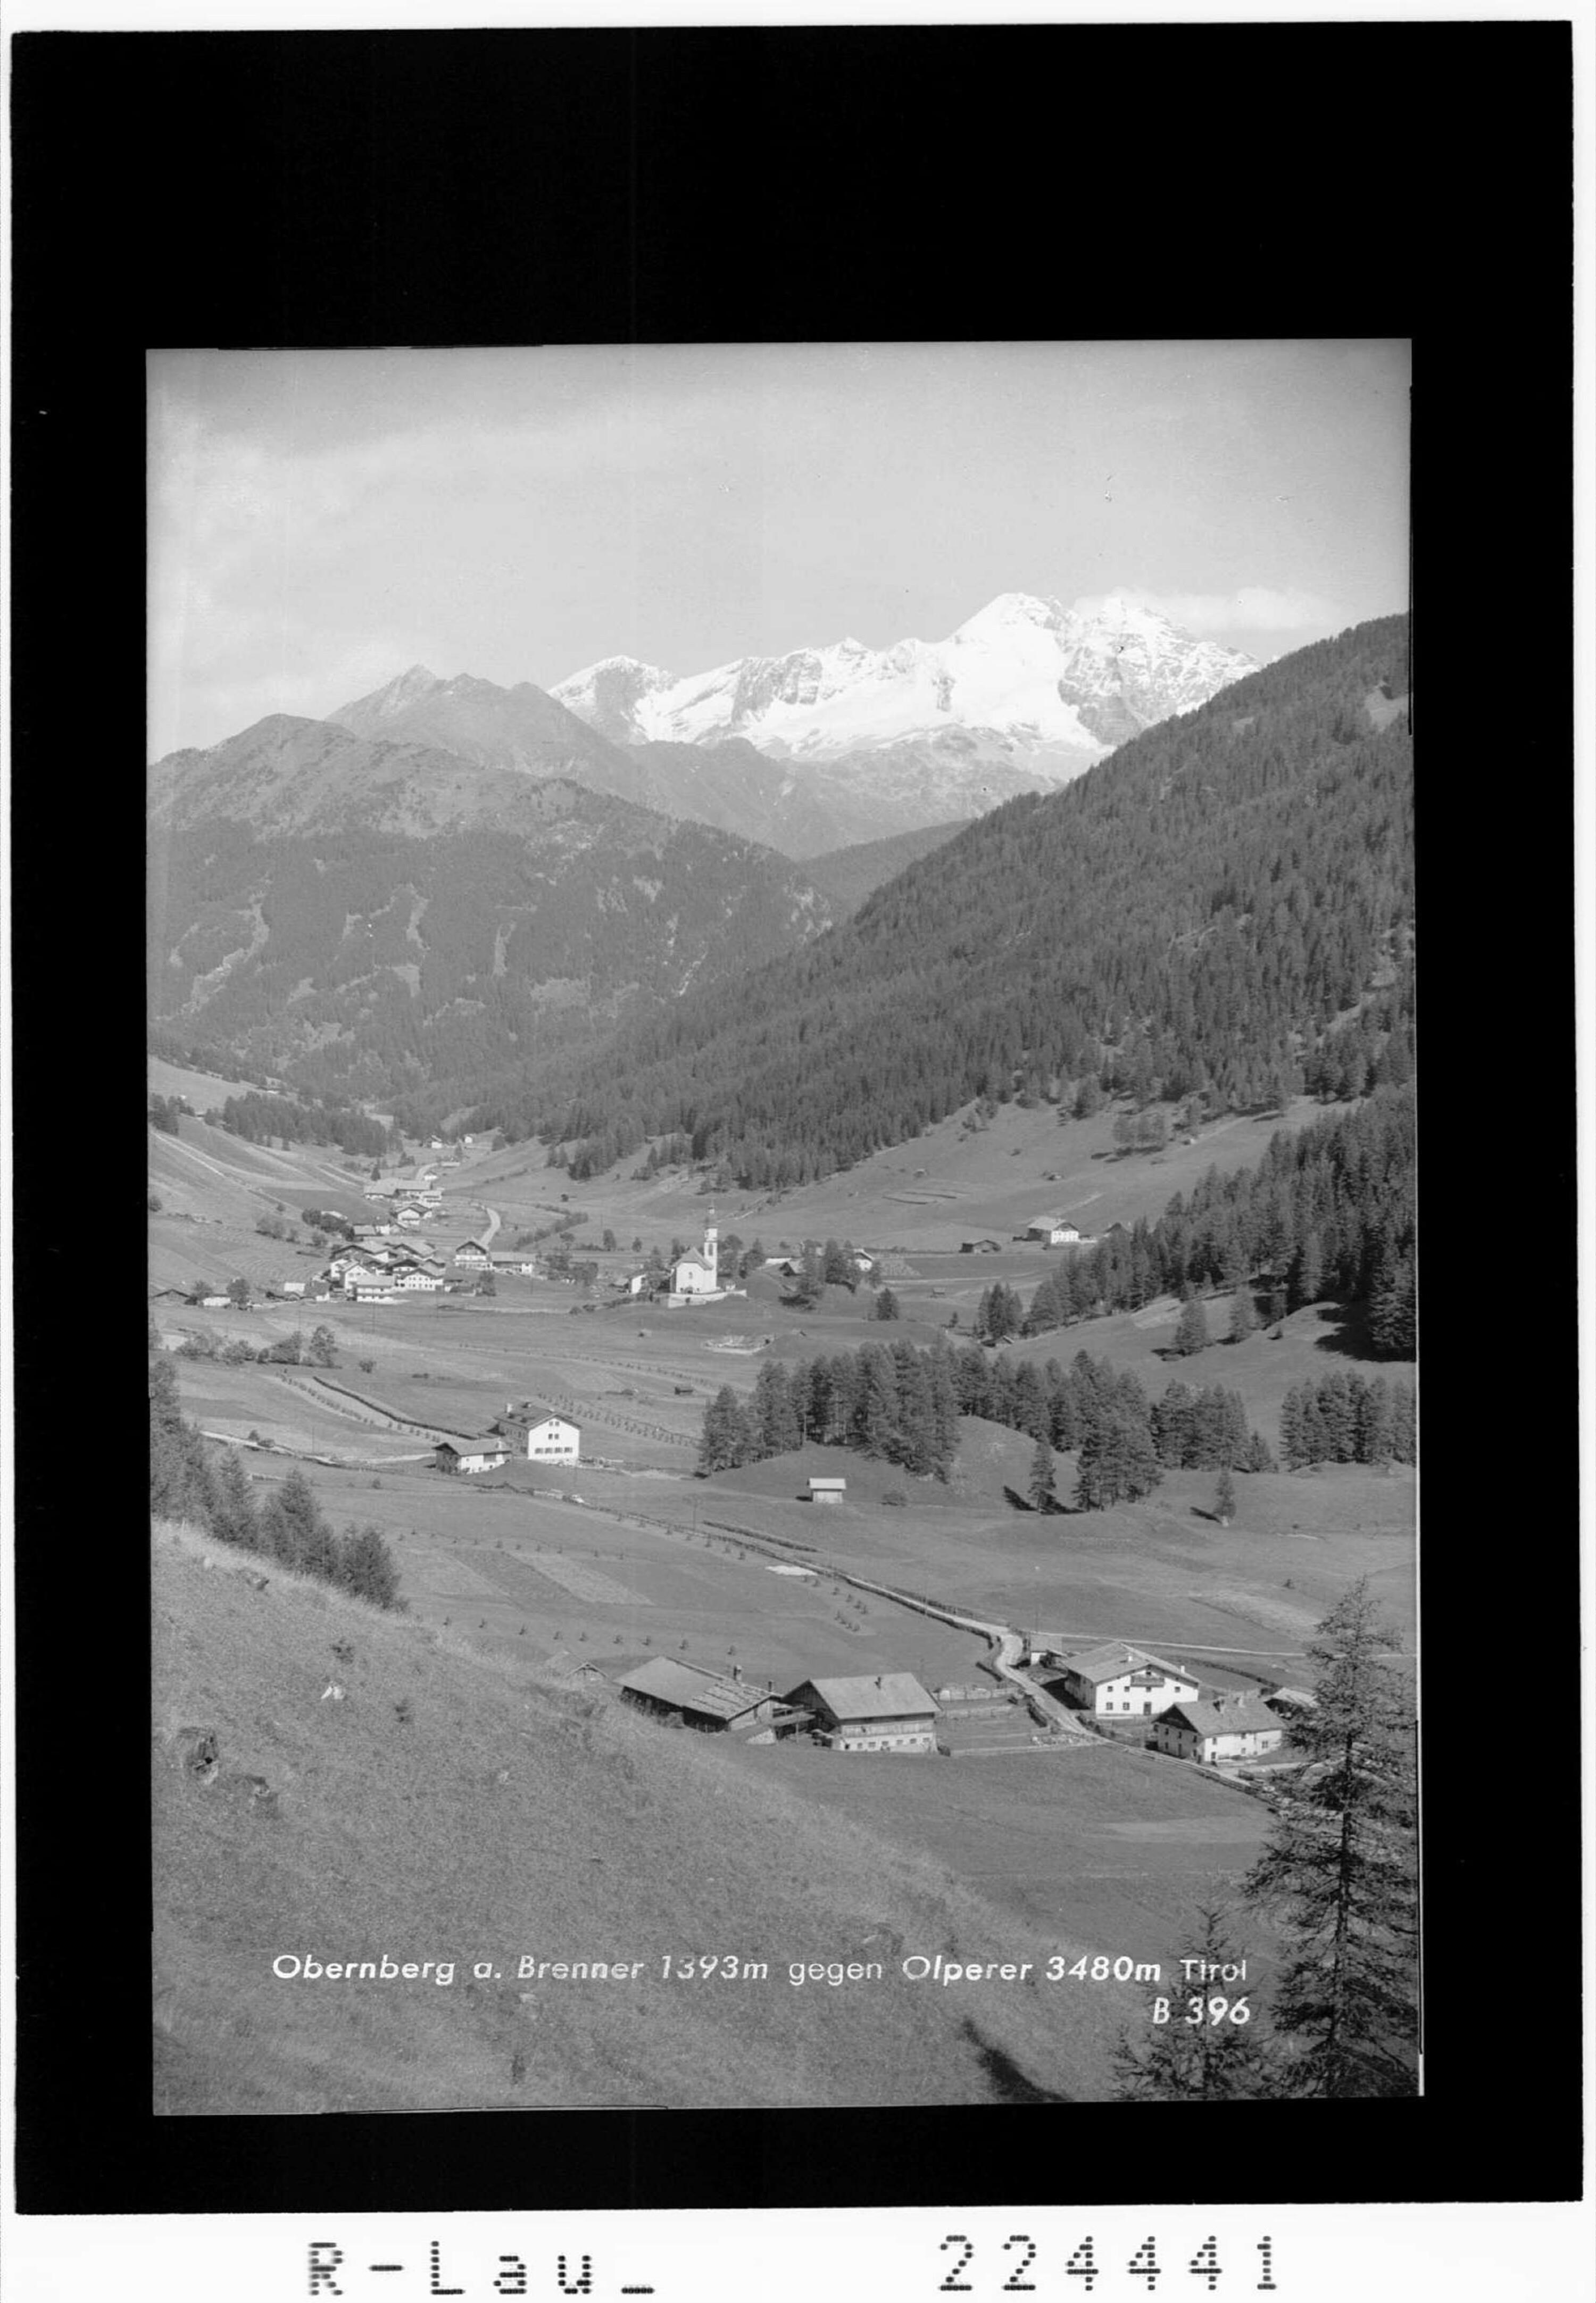 Obernberg am Brenner 1393 m gegen Olperer 3480 m / Tirol></div>


    <hr>
    <div class=